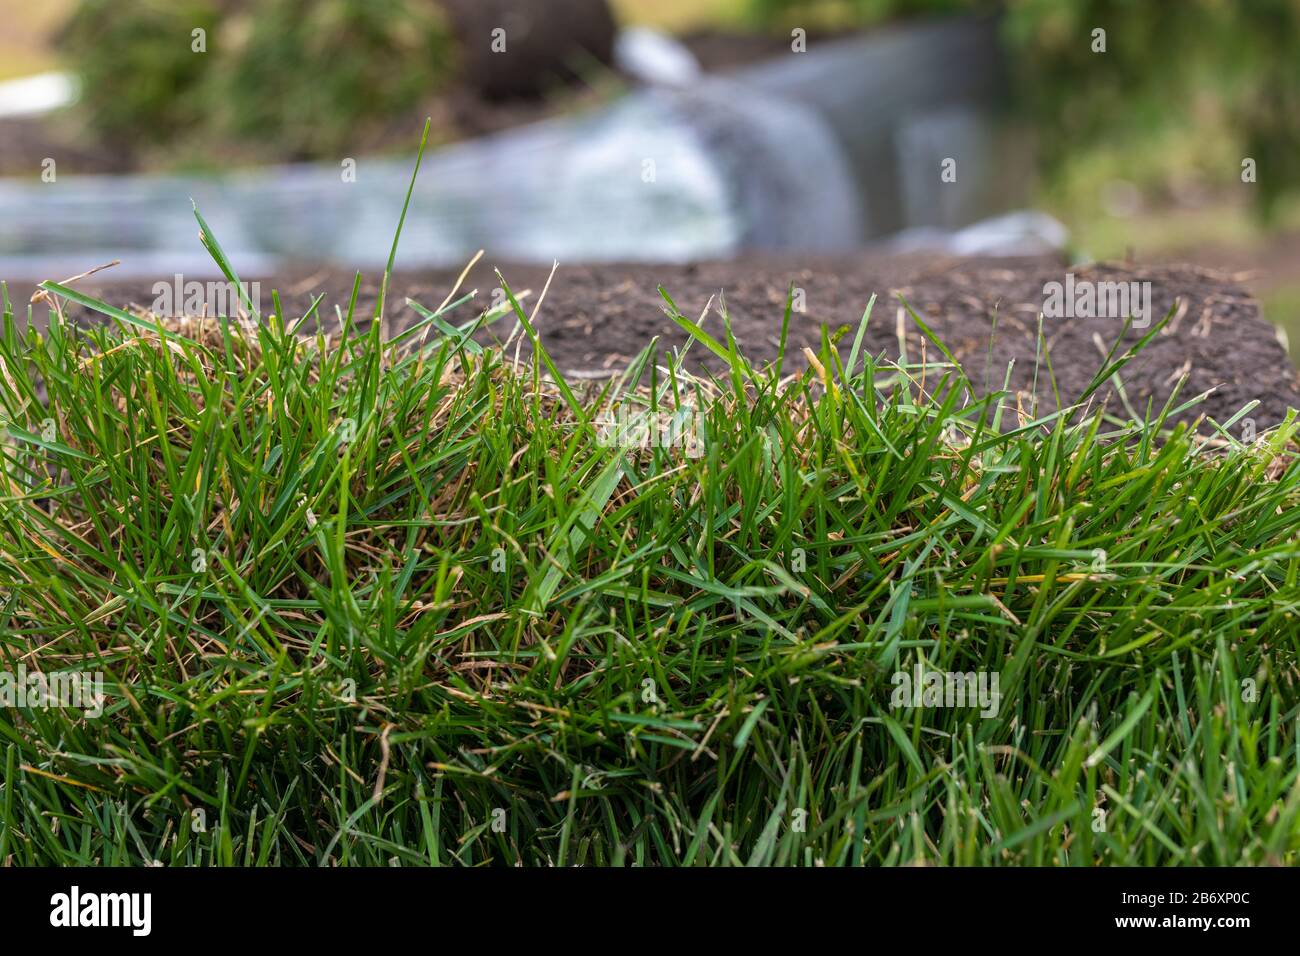 tapis vert en rouleau pour pelouse. Pile de rouleaux de gazon pour l'aménagement paysager. Banque D'Images